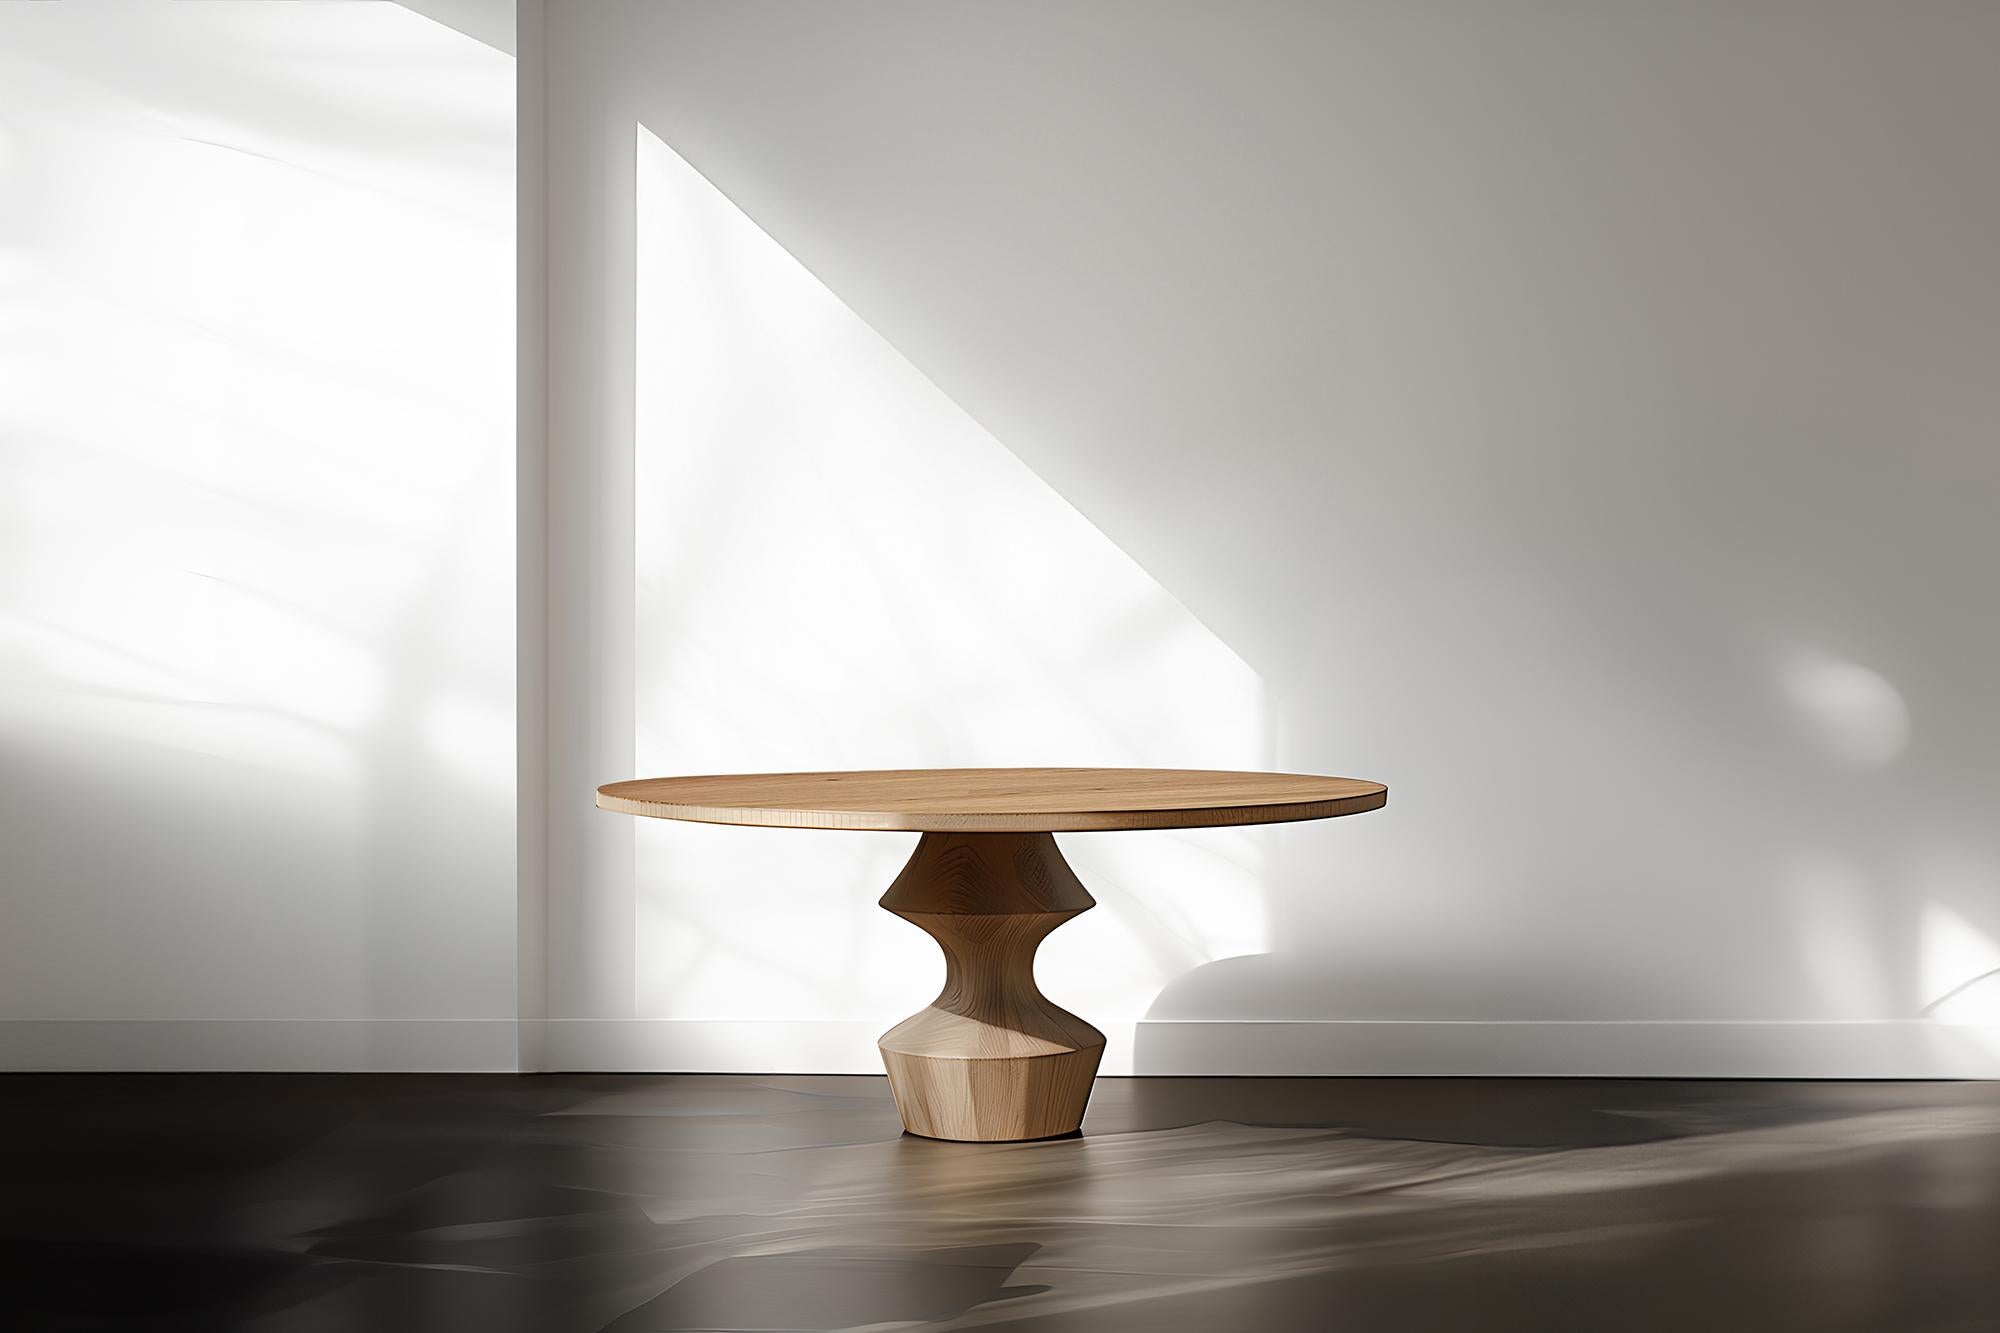 Tables à dessert Socle No11, Sweet Design en bois massif par NONO

--

Voici la 